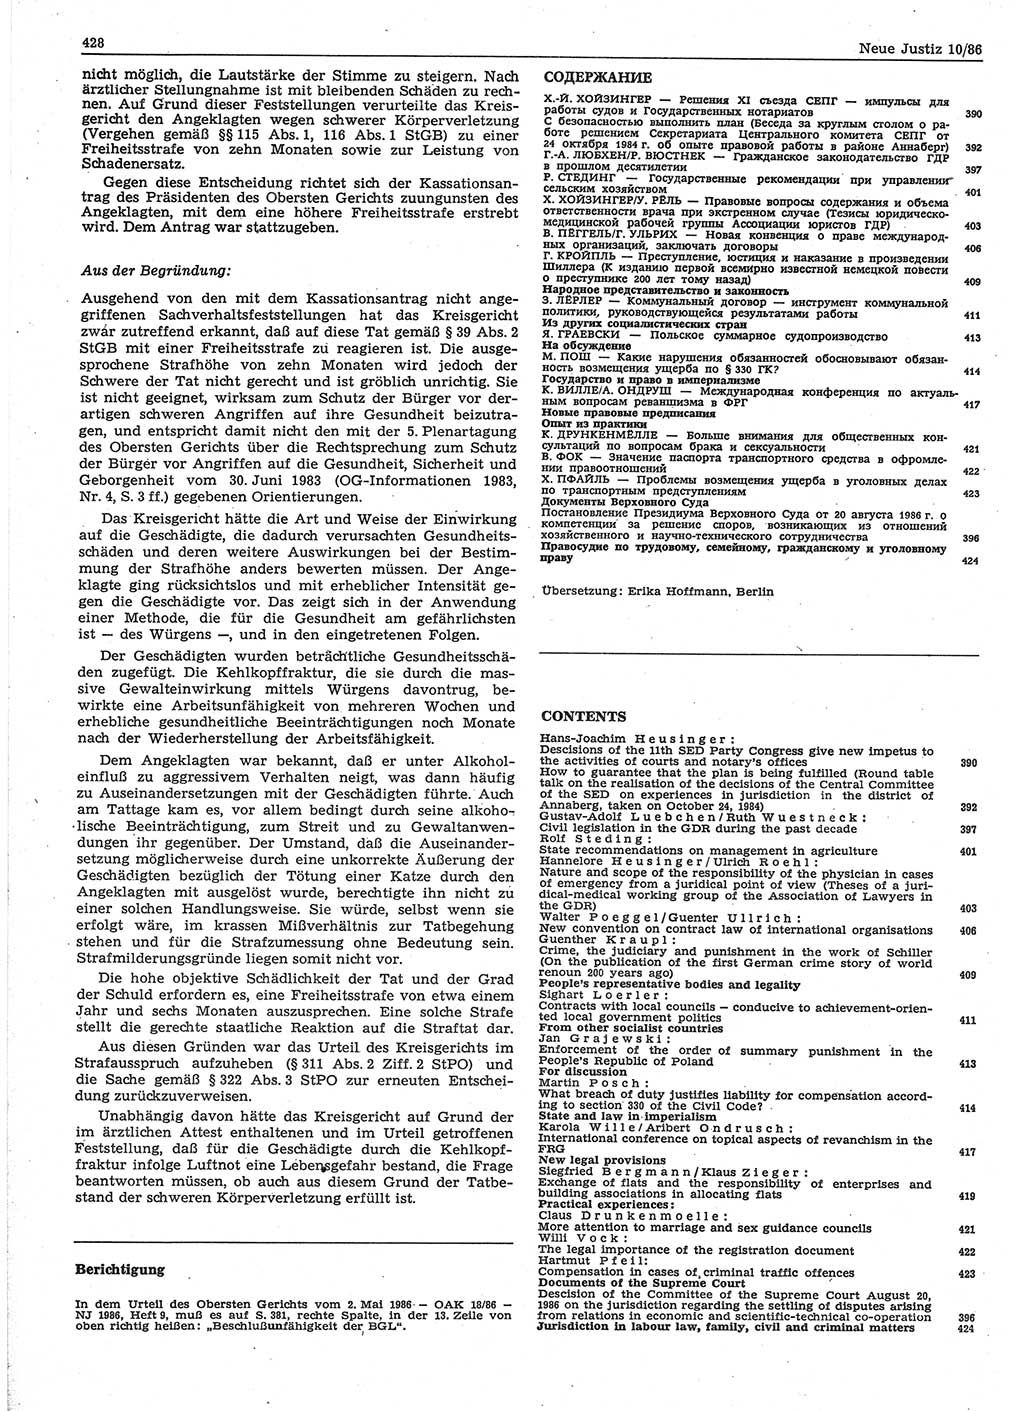 Neue Justiz (NJ), Zeitschrift für sozialistisches Recht und Gesetzlichkeit [Deutsche Demokratische Republik (DDR)], 40. Jahrgang 1986, Seite 428 (NJ DDR 1986, S. 428)